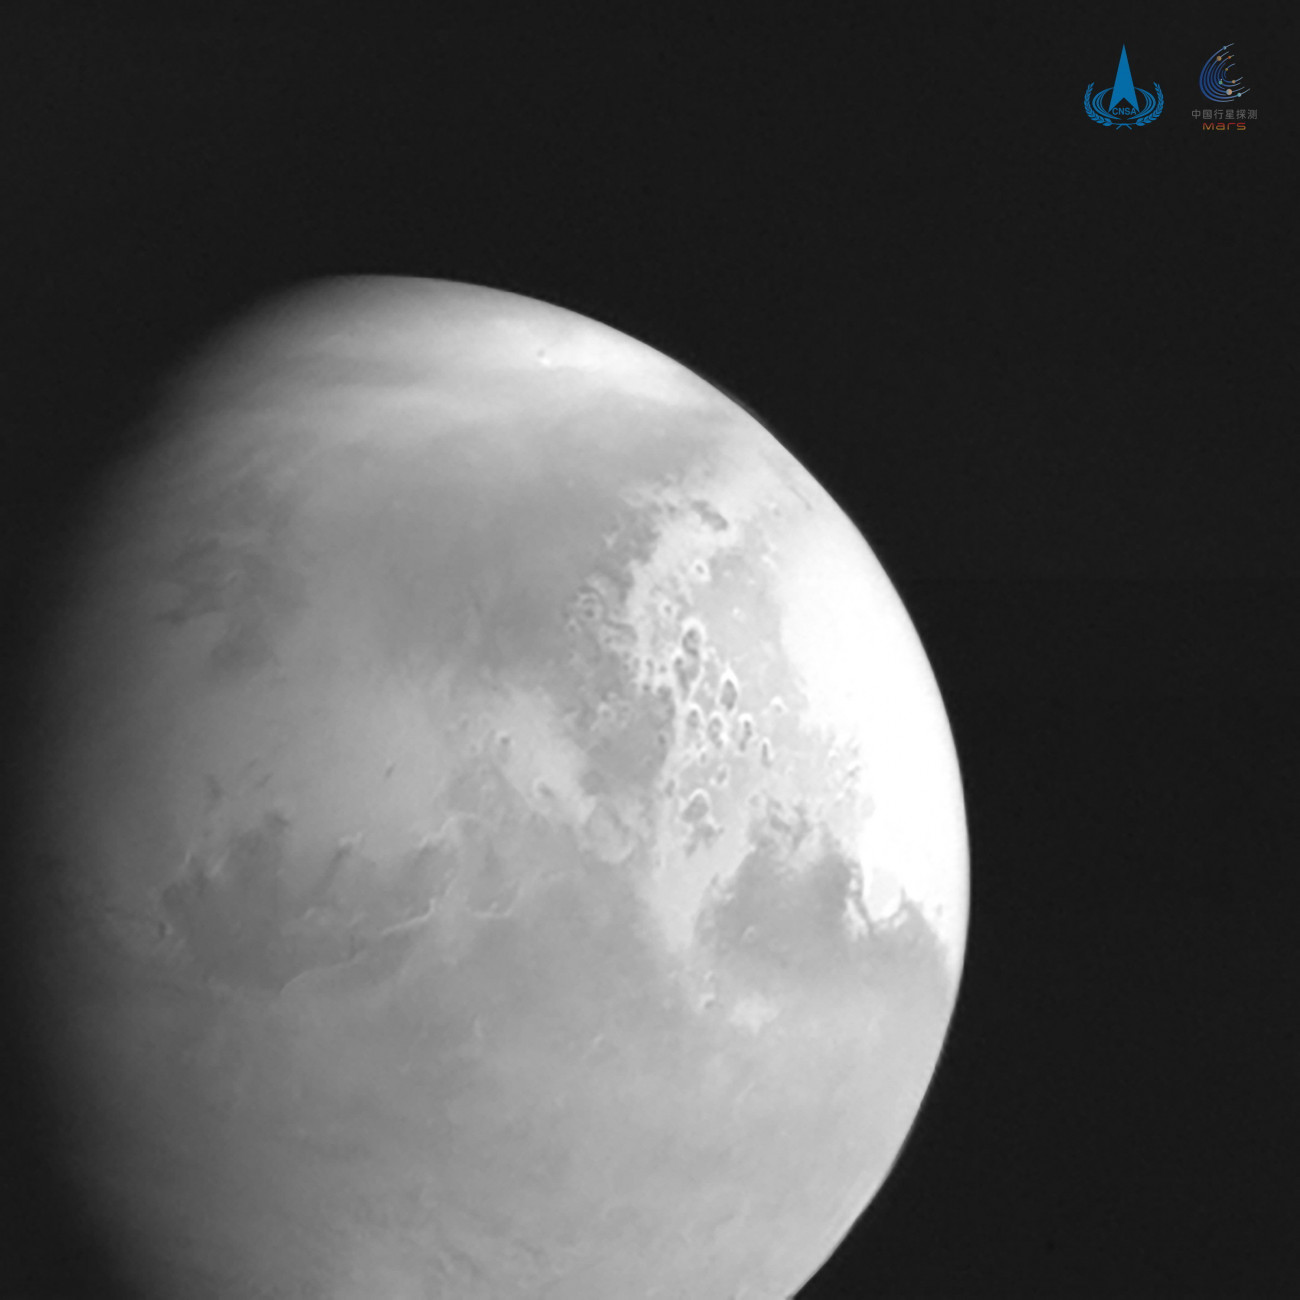 Világűr, 2021. február 10.
A Kínai Nemzeti Űrügynökség (CNSA) által 2021. február 10-én közreadott és a Tianven-1 (Kérdések a mennynek) kínai űrszonda által készített kép a Marsról, amikor az űreszköz 2,2 millió kilométerre volt a bolygótól. A tervek szerint a Tianven-1 február 10-én áll Mars körüli pályára.
MTI/AP/Hszinhua/CNSA